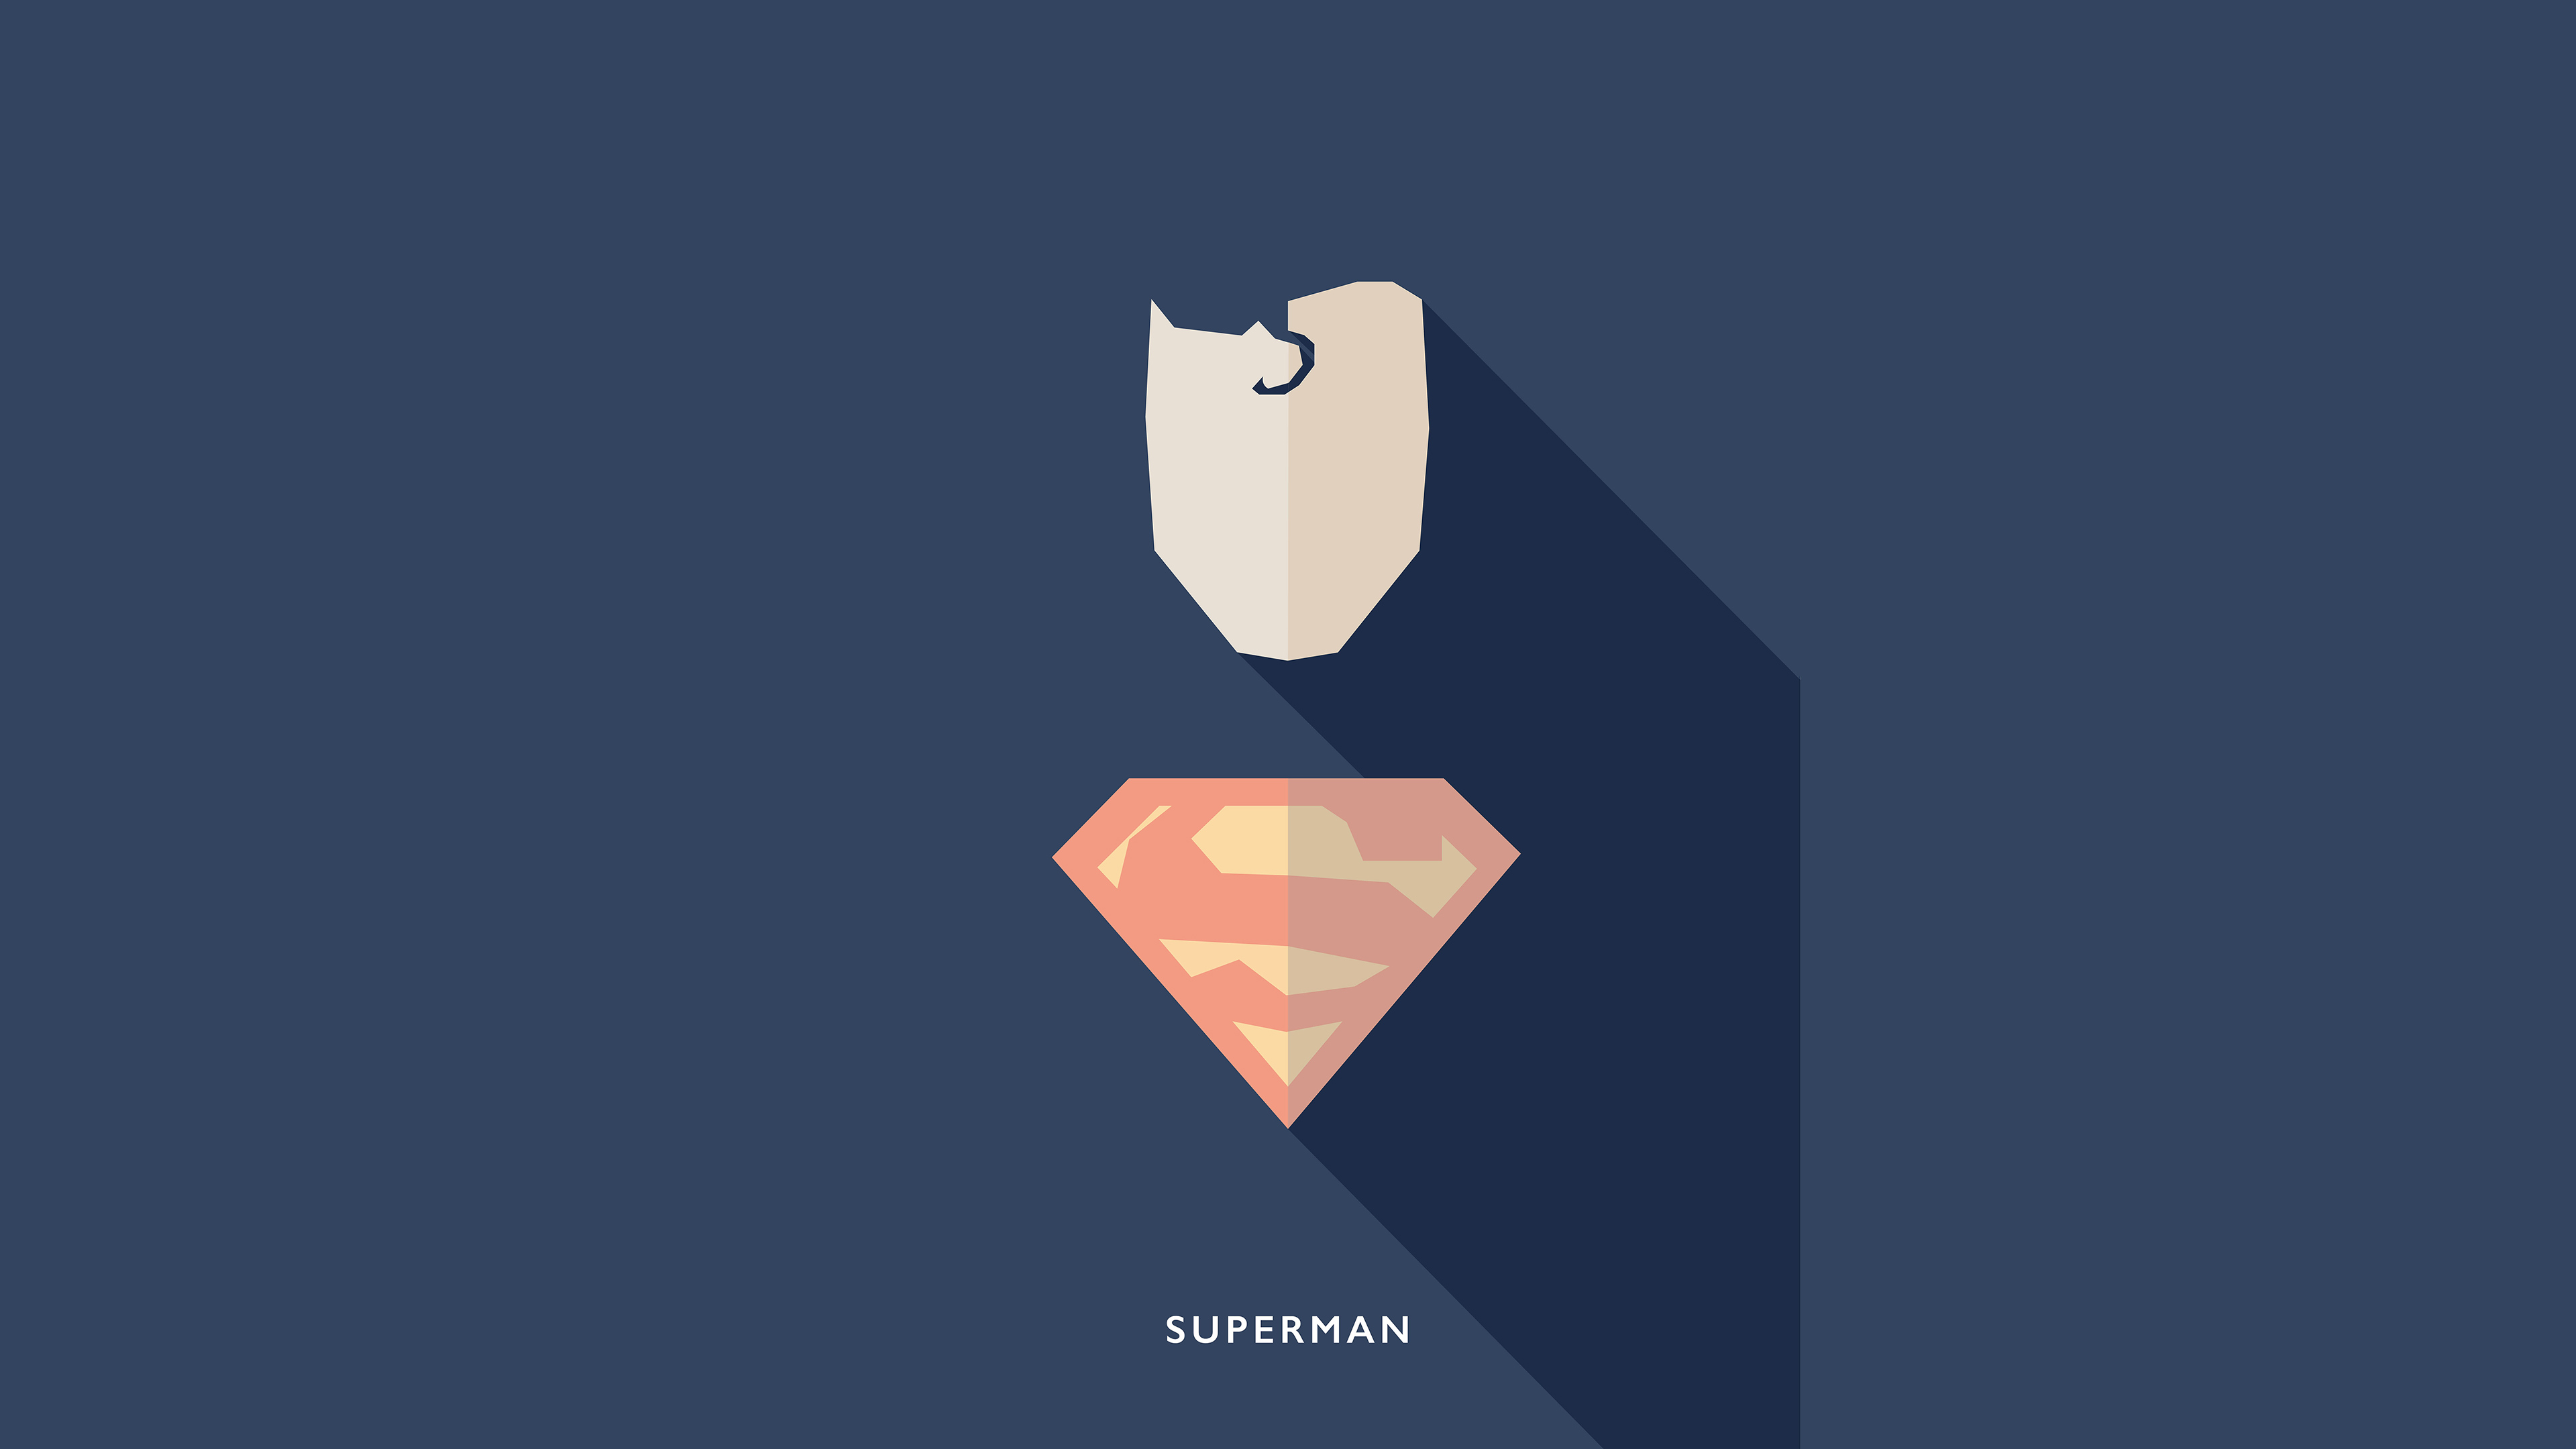 superman minimalists 4k 1553071379 - Superman Minimalists 4k - superman wallpapers, superheroes wallpapers, minimalist wallpapers, minimalism wallpapers, hd-wallpapers, digital art wallpapers, behance wallpapers, artwork wallpapers, artist wallpapers, 4k-wallpapers